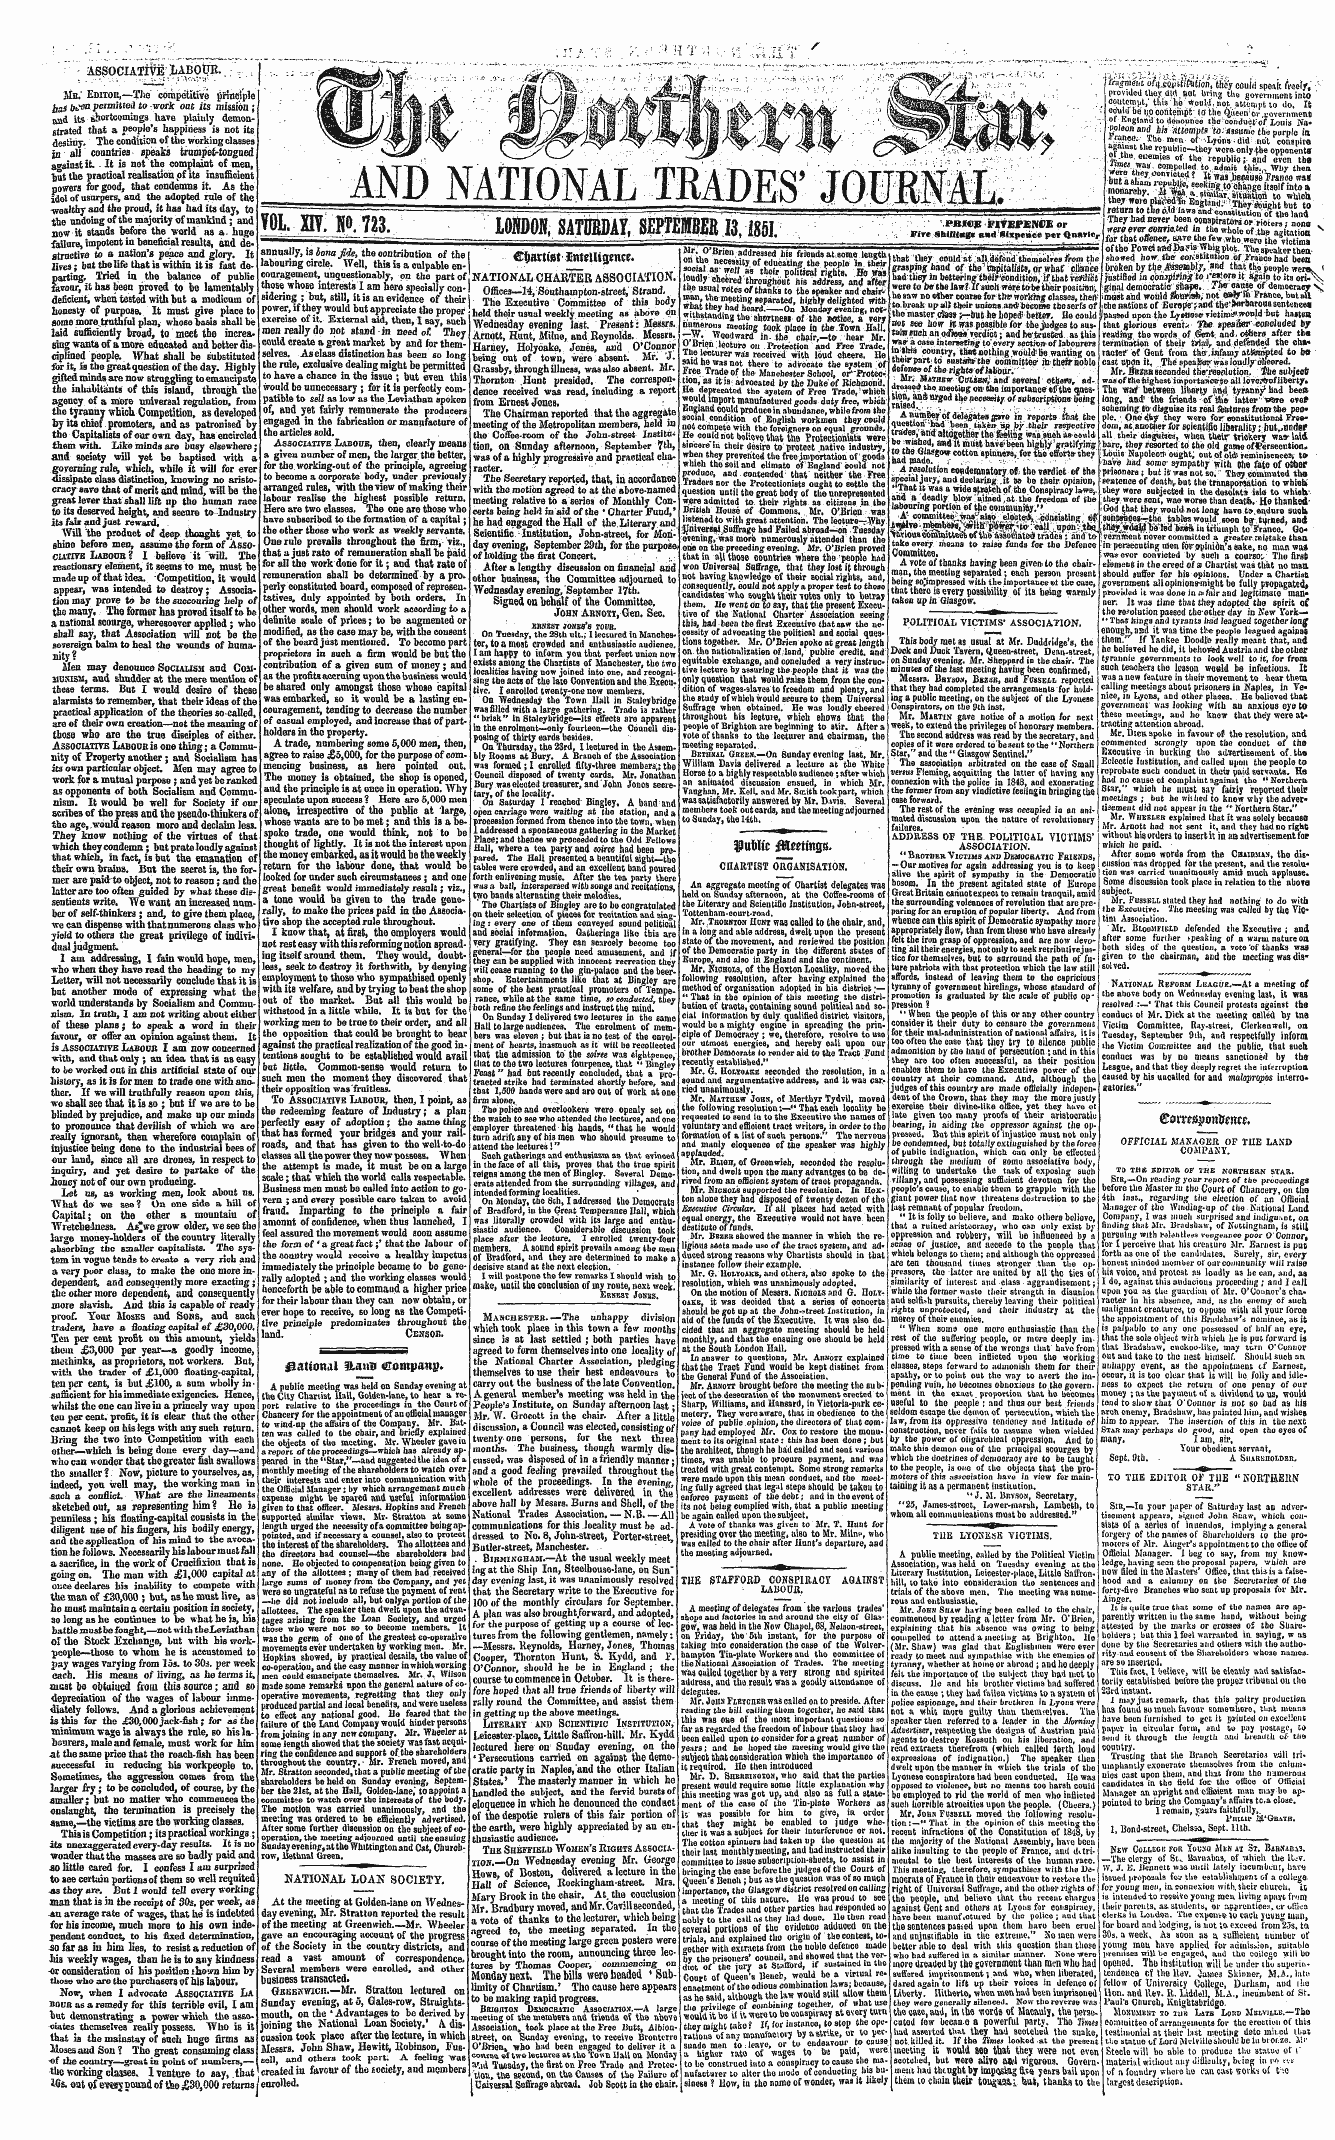 Northern Star (1837-1852): jS F Y, 2nd edition - Ffiomaptotonw